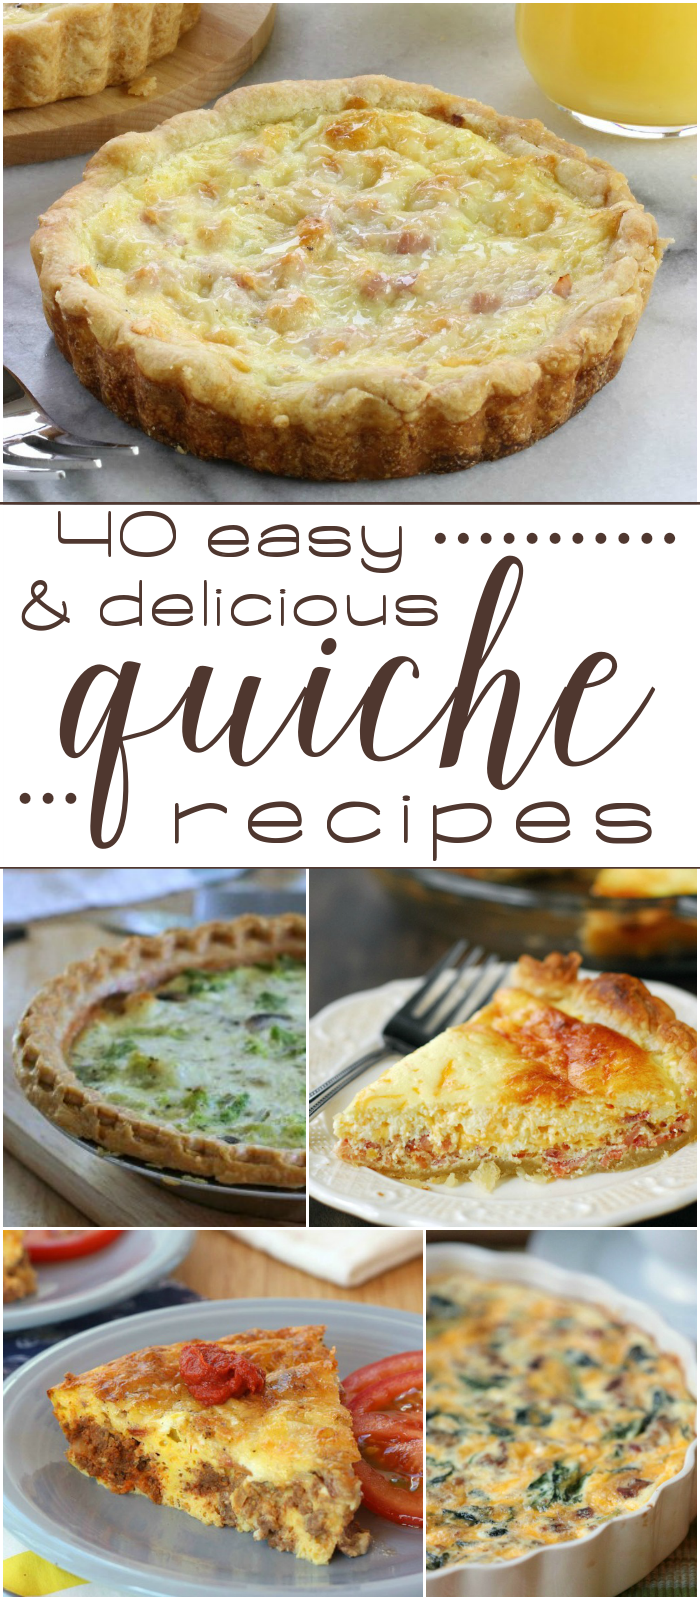 40 Easy & Delicious Quiche Recipes collage.